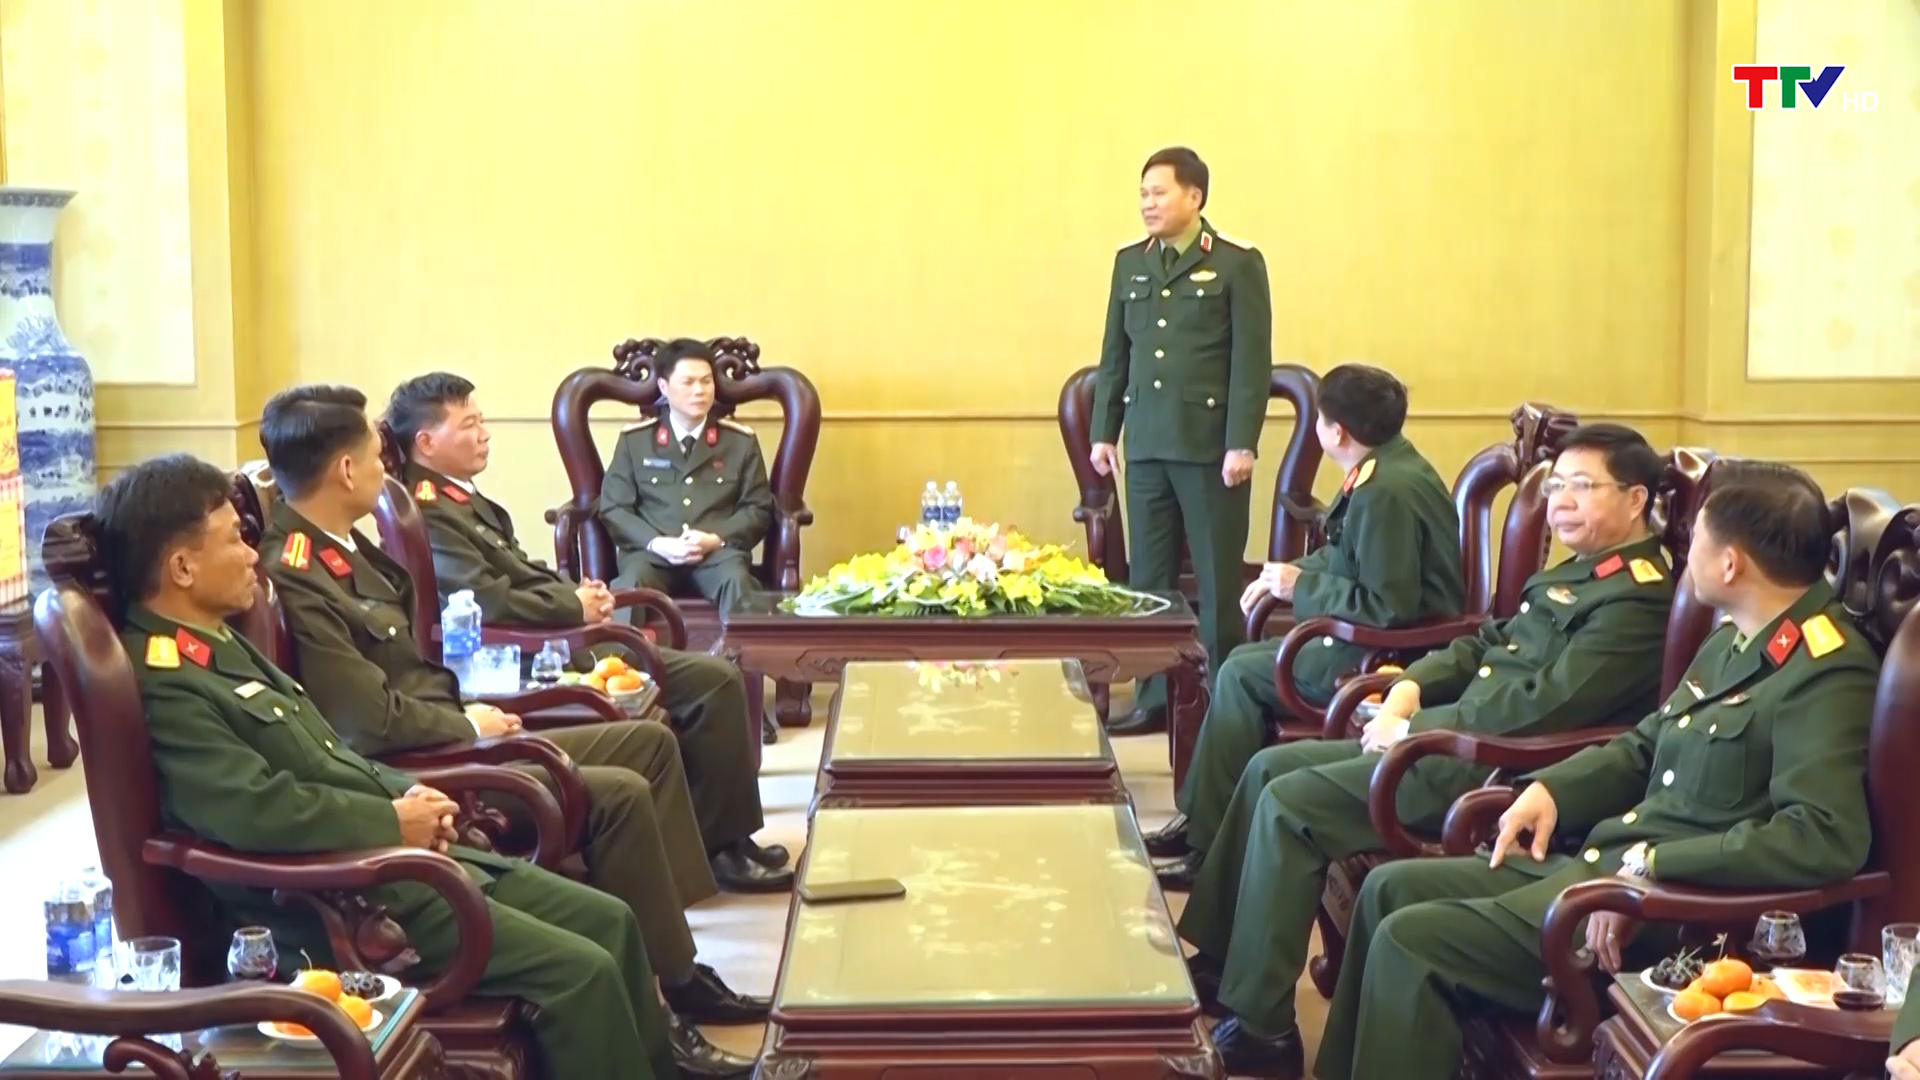 Bộ Tư lệnh Quân khu 4 kiểm tra công tác sẵn sáng chiến đấu, chúc Tết các đơn vị trên địa bàn tỉnh Thanh Hóa - Ảnh 5.